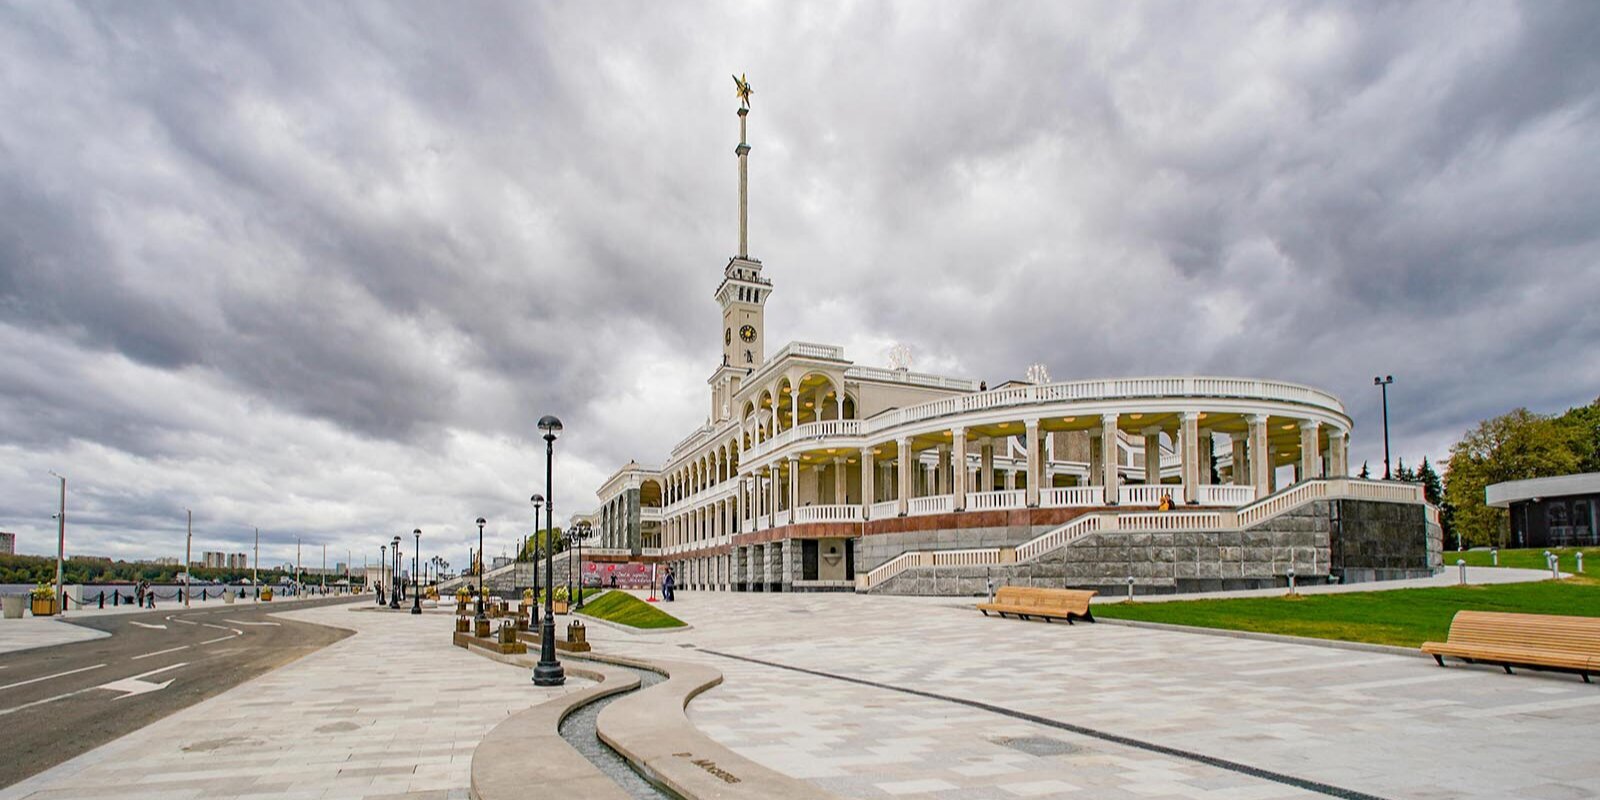 Московский речной вокзал занял призовое место в конкурсе дизайна